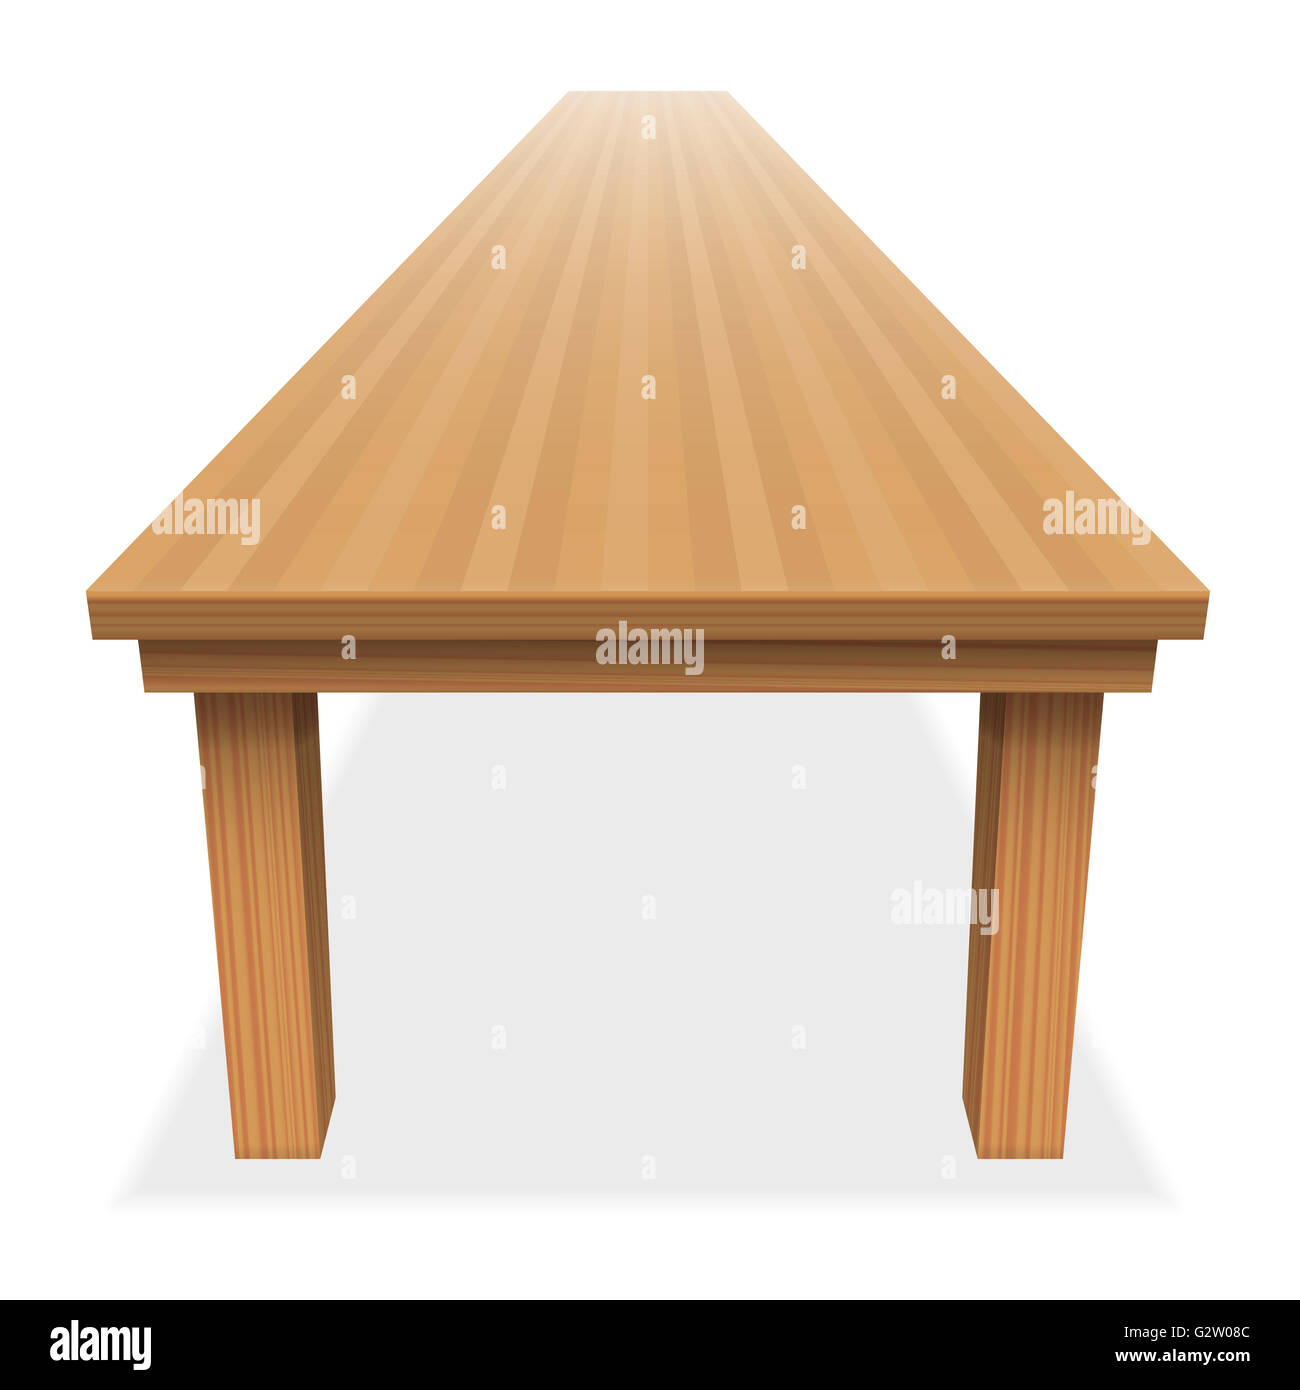 Très longue table en bois vide - banquet de fête pour la perspective ou comme - Vue de dessus - illustration sur fond blanc. Banque D'Images